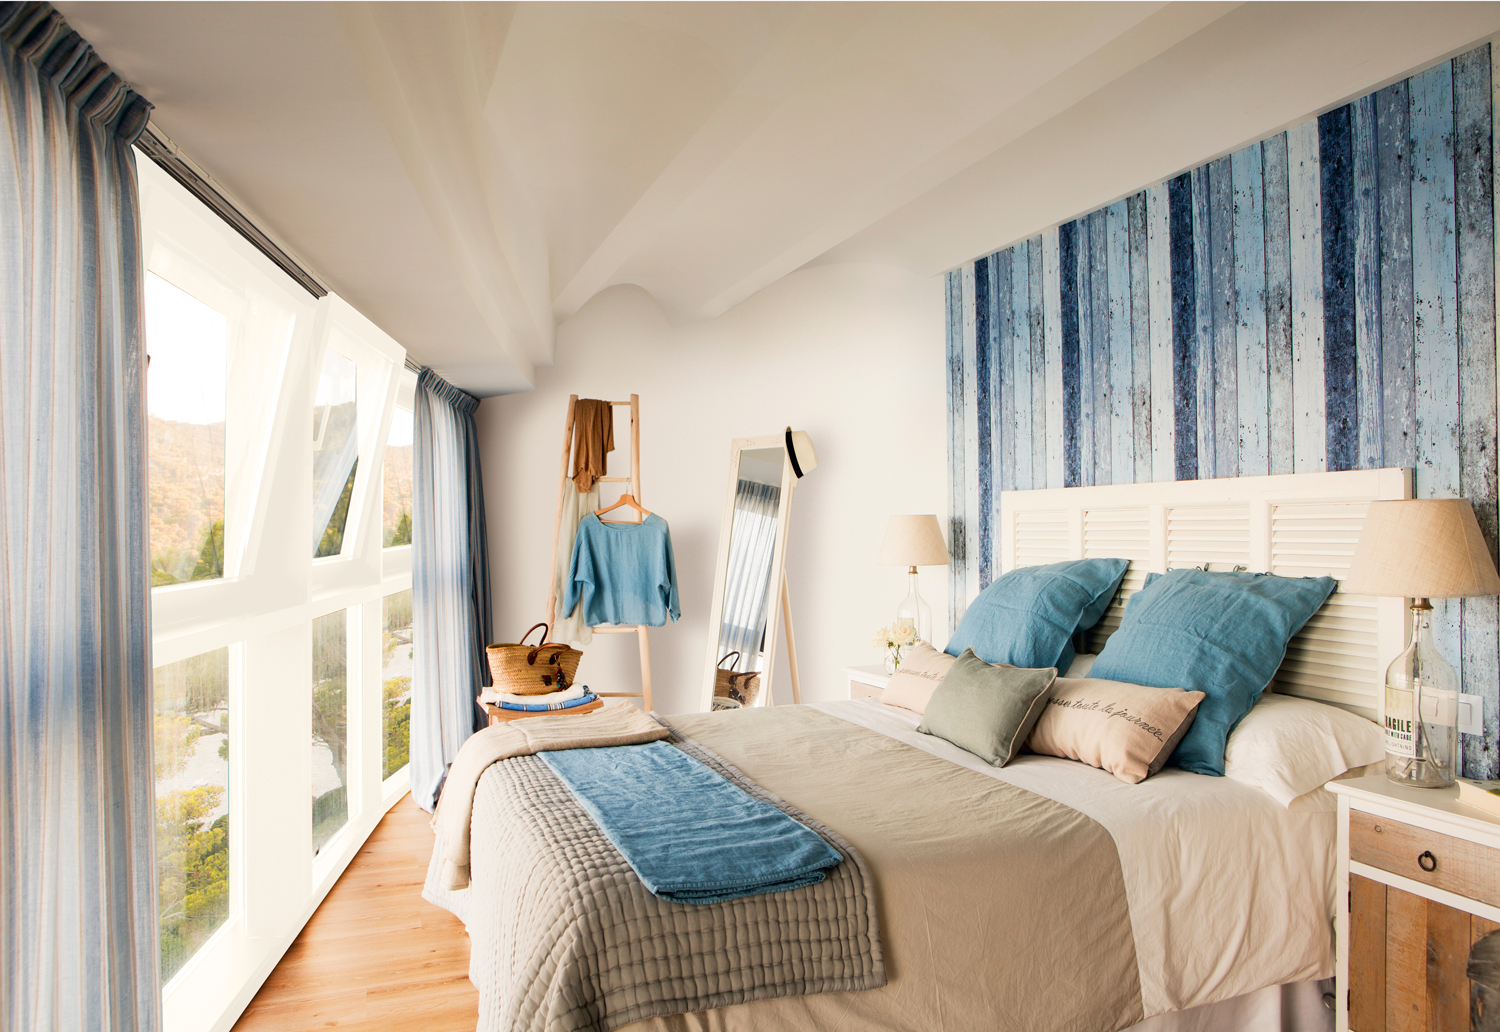 Dormitorio con pared de ventanas y cabecero con lamas de diferentes color de azul